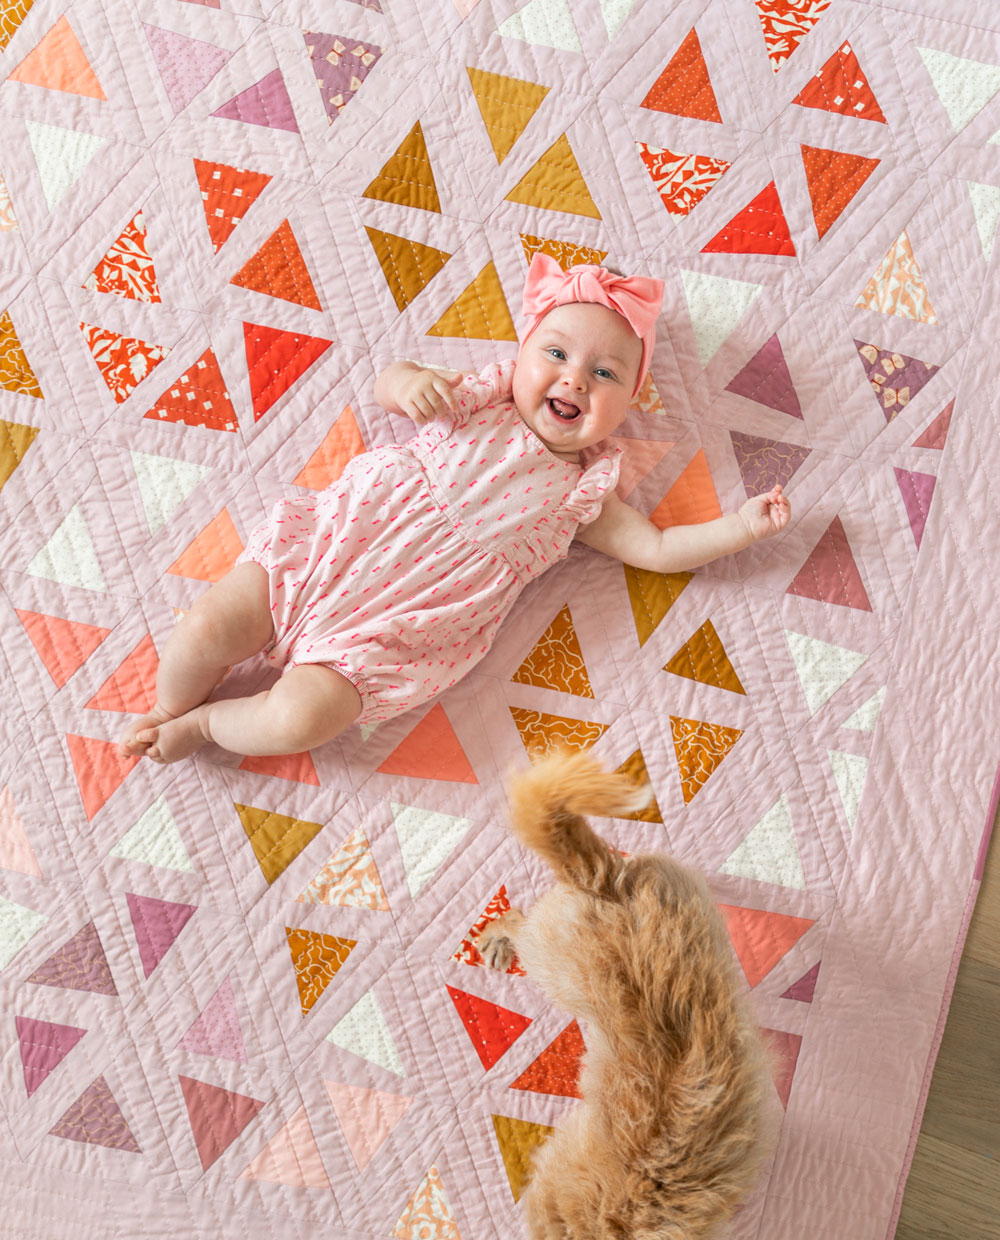 21 + Gorgeous Applique Baby Quilt Patterns - Scrap Fabric Love